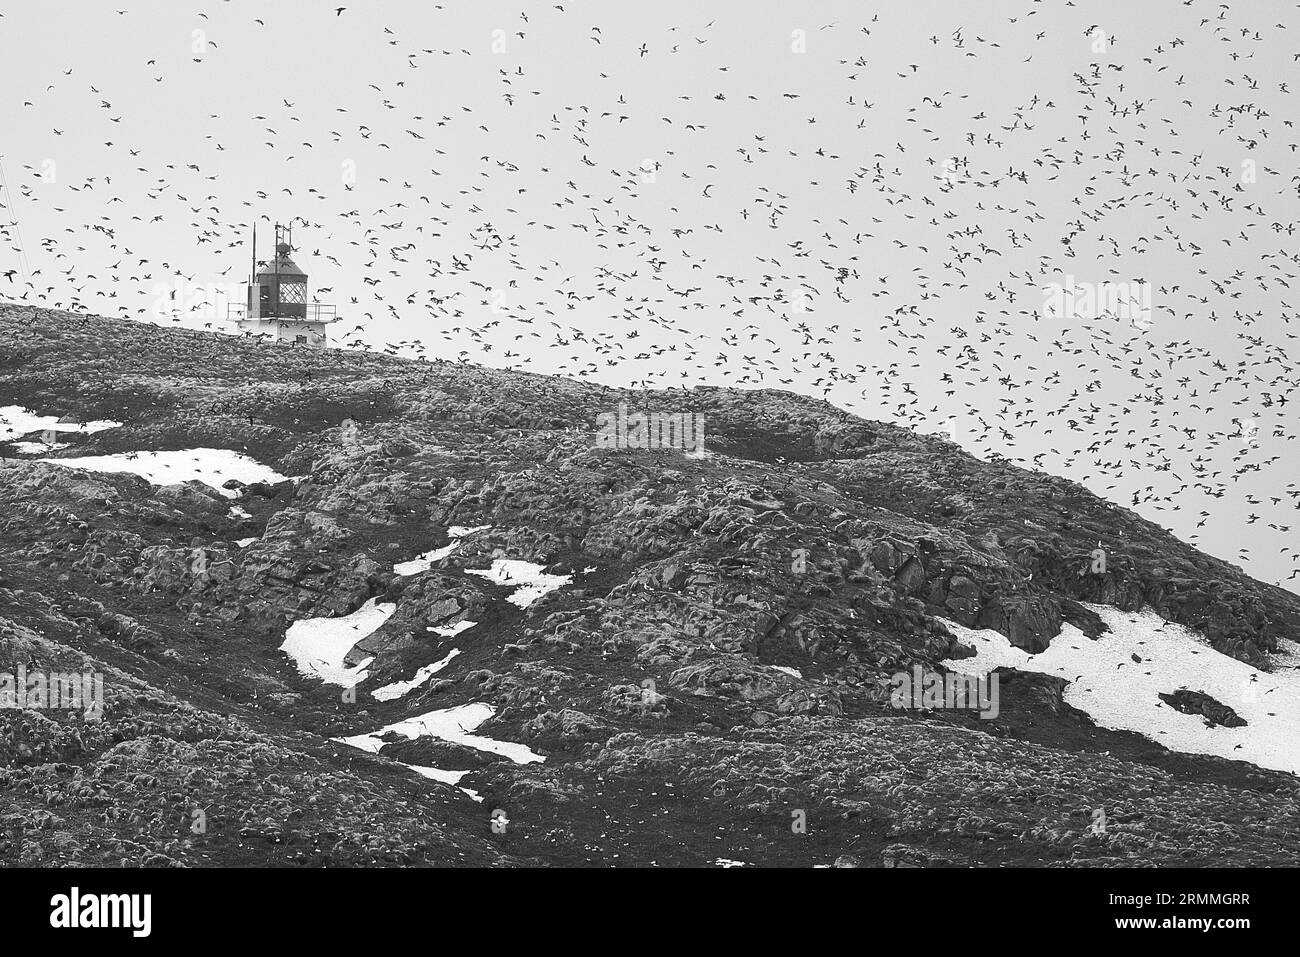 Foto in bianco e nero del faro di Vardø, costruito nel 1896 sulla piccola isola di Hornøya, circondato da Un grande gregge di uccelli marini. Norvegia. Foto Stock